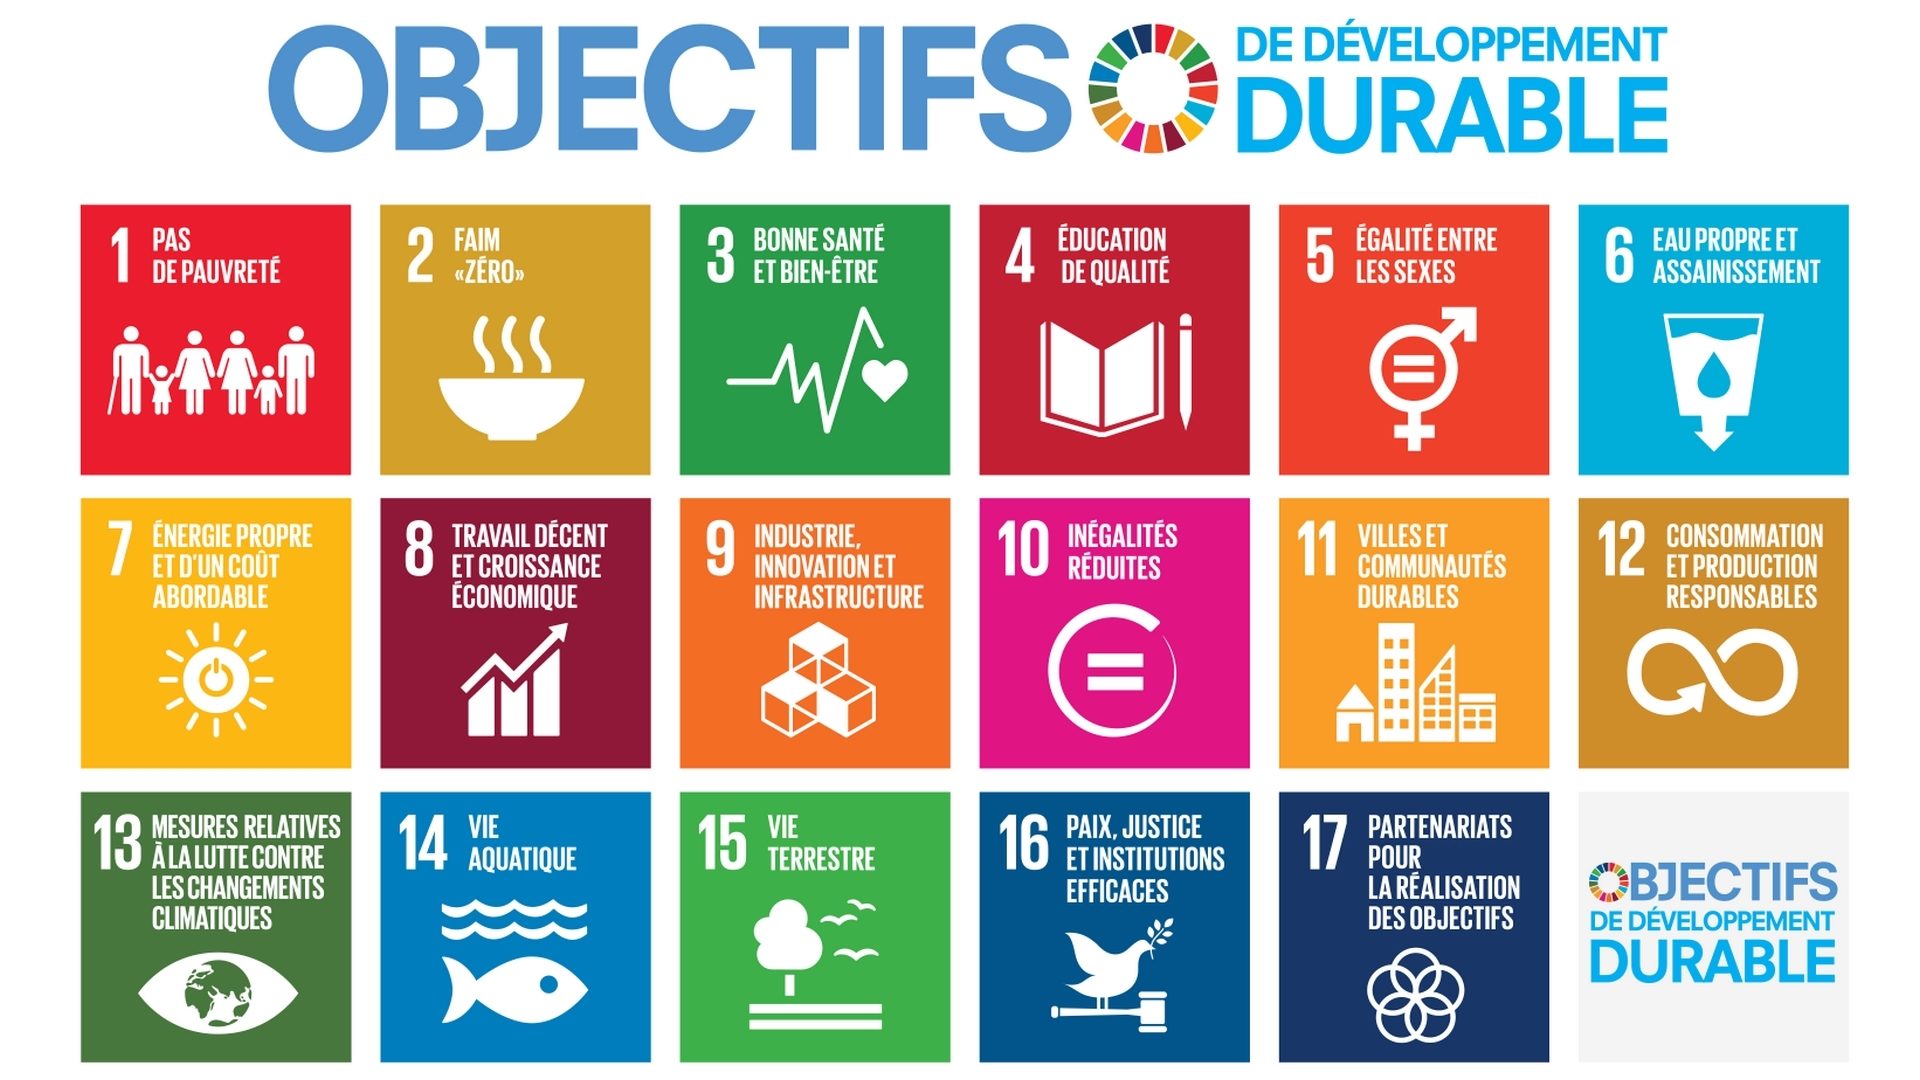 Les objectifs de développement durable (ODD) ont été adoptées par l'ONU en 2015 . Ils concernent aussi la Suisse